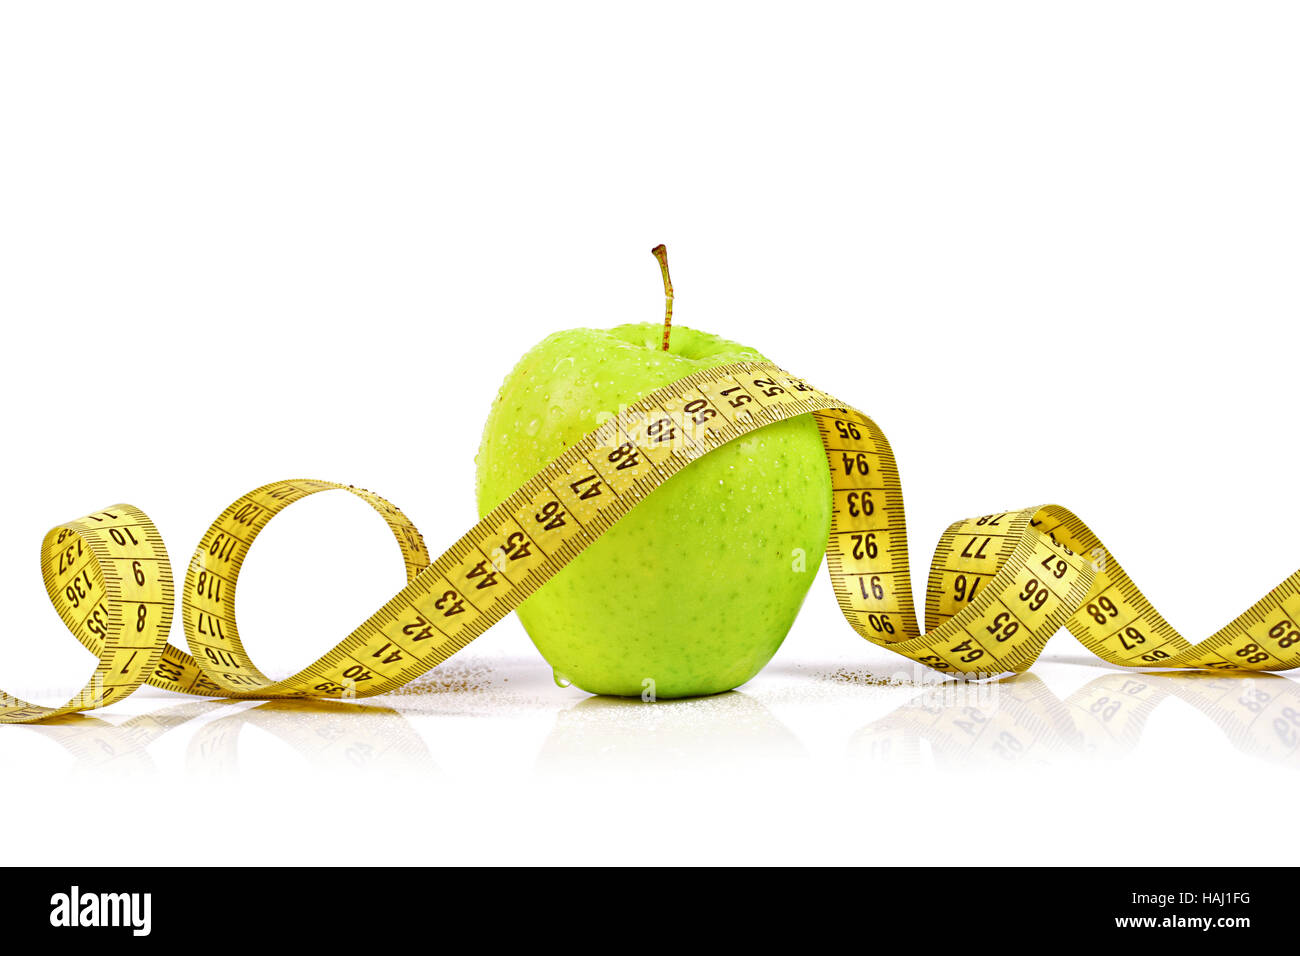 Diät - frischer Apfel mit Maßband Stockfoto